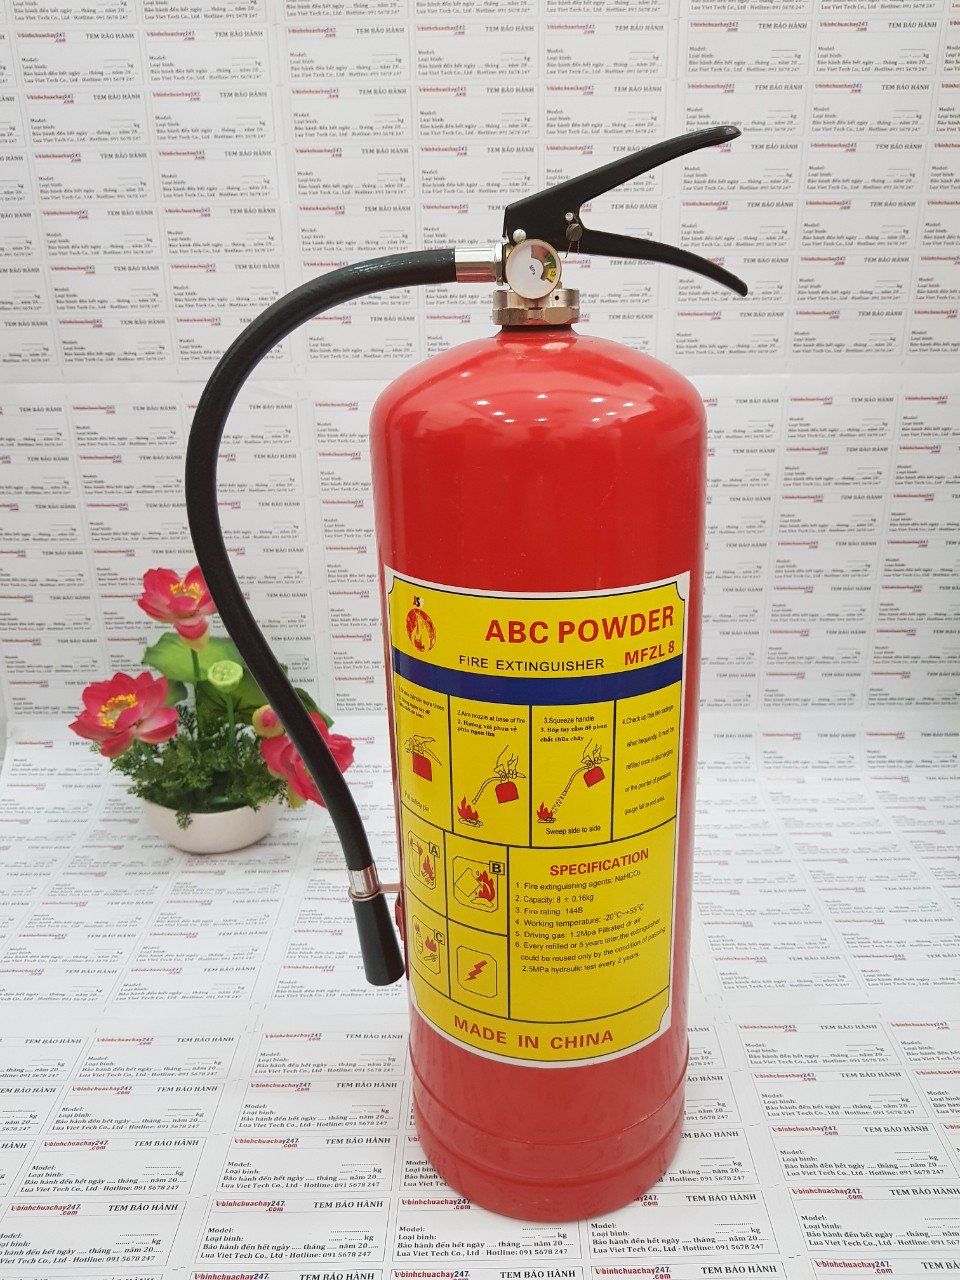  Bình chữa cháy bột ABC 8kg - Model MFZL8 